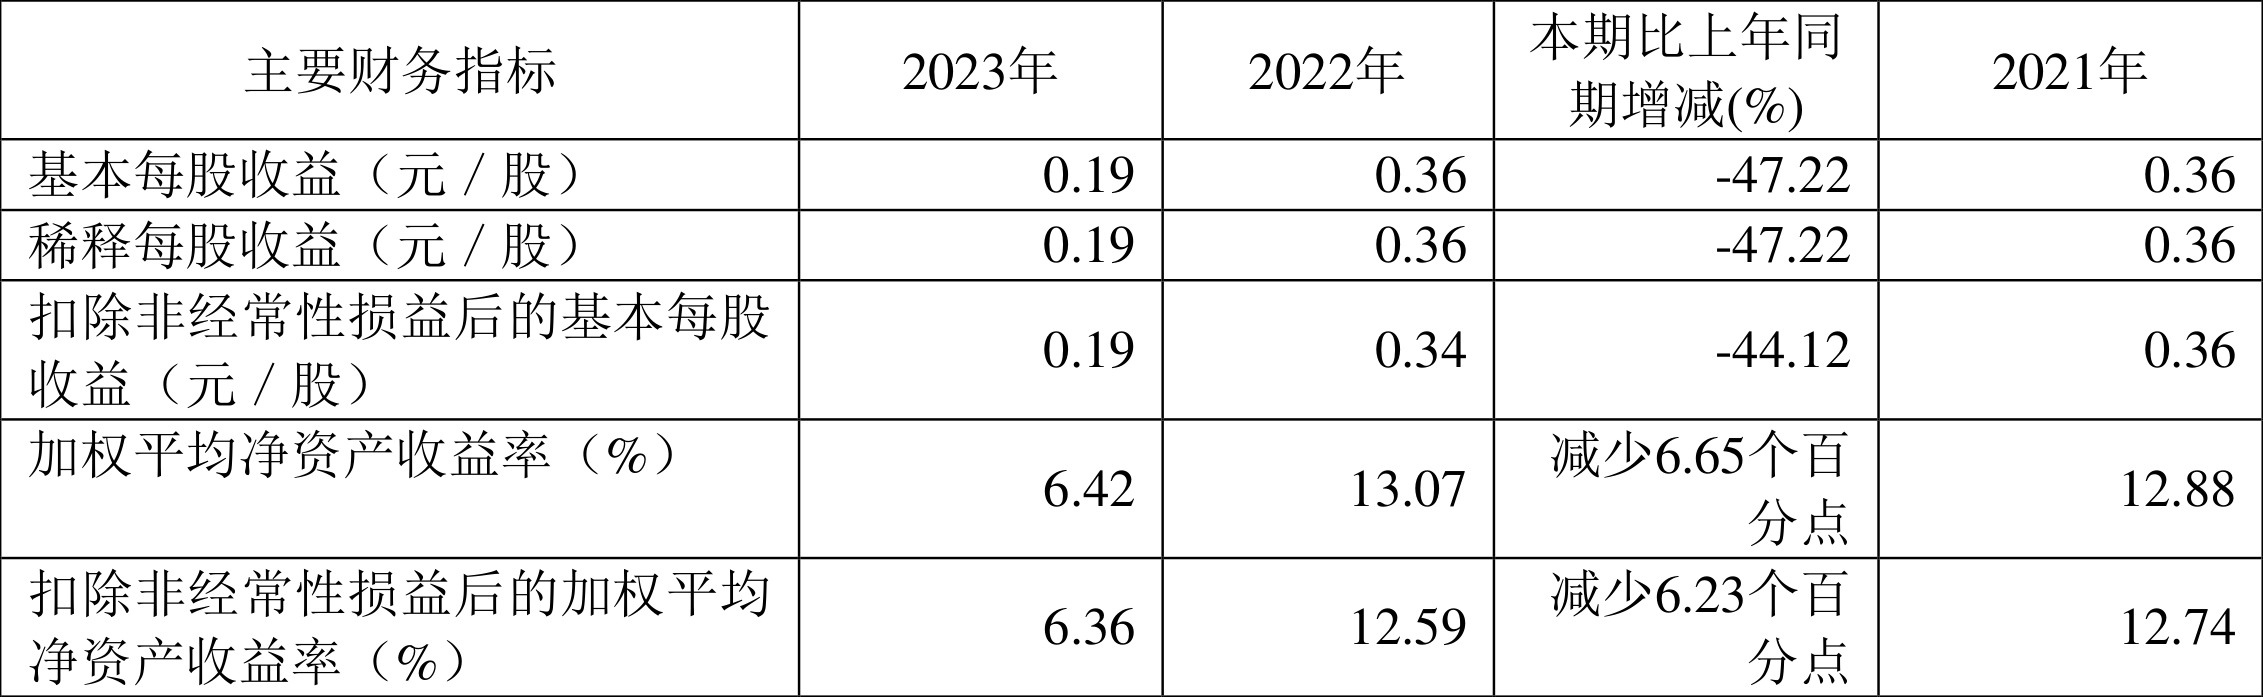 三祥新材：2023年凈利同比下降47.48% 擬10派0.75元